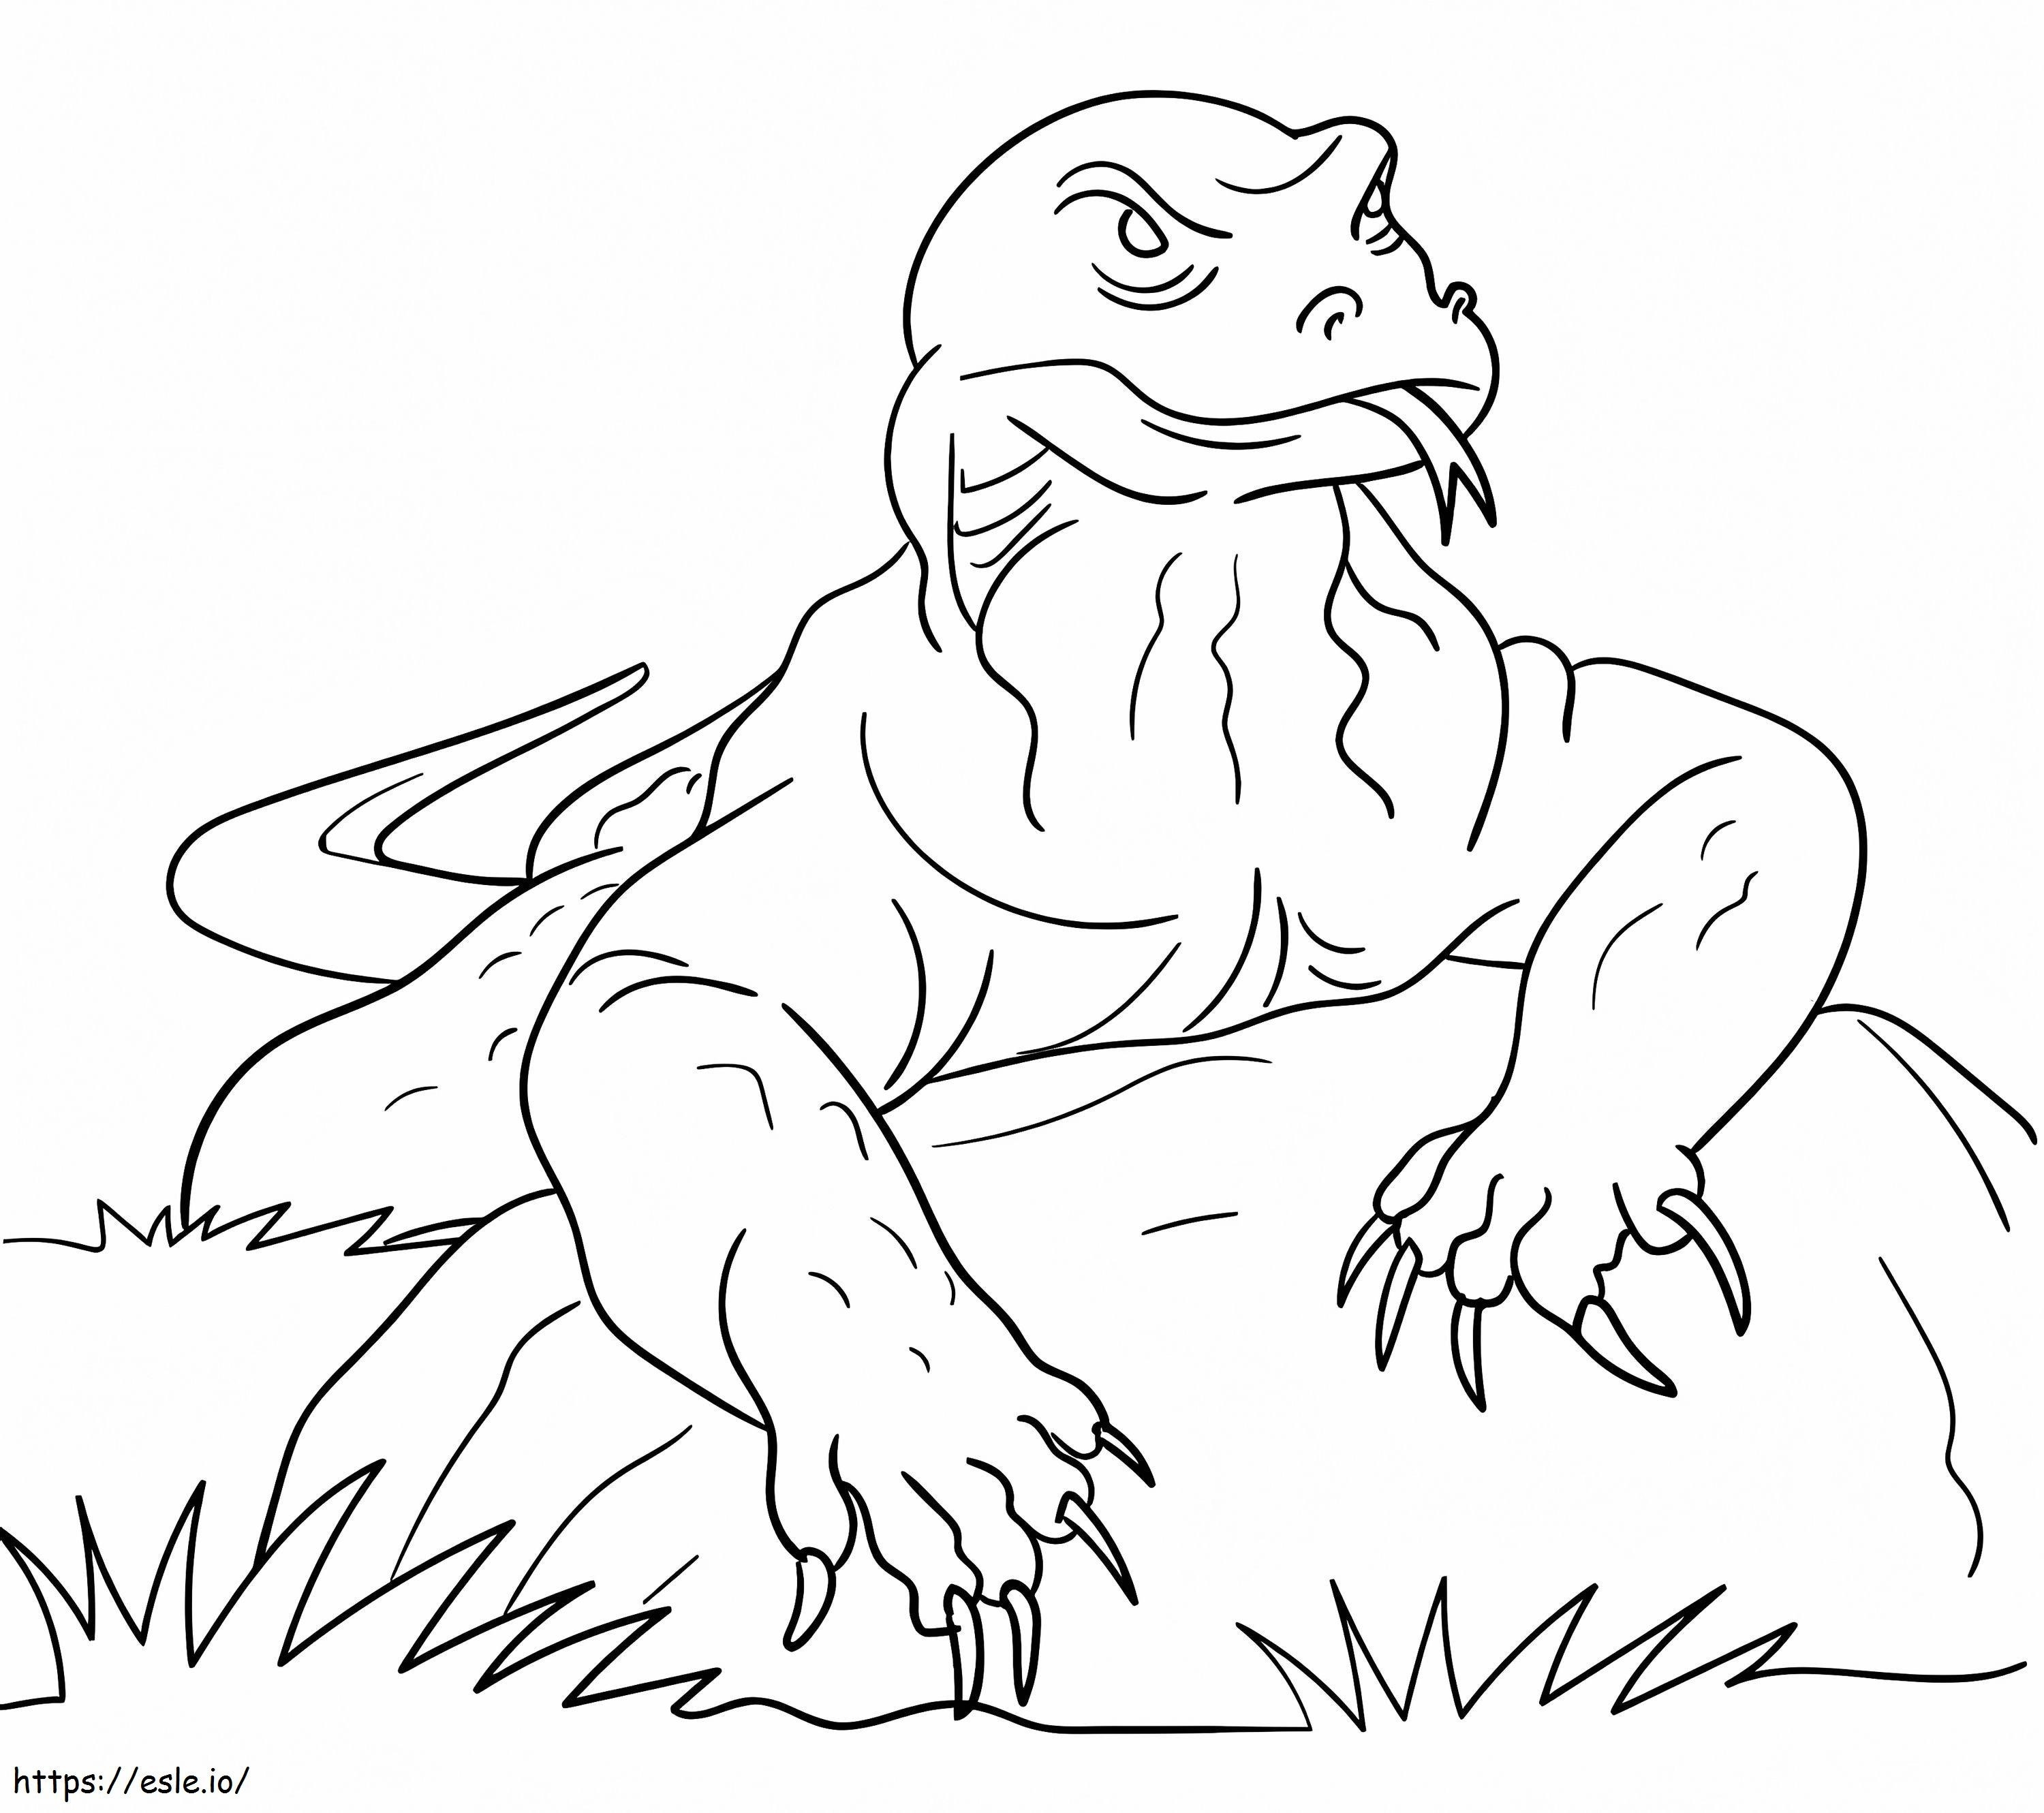 Dragão de Komodo na rocha para colorir